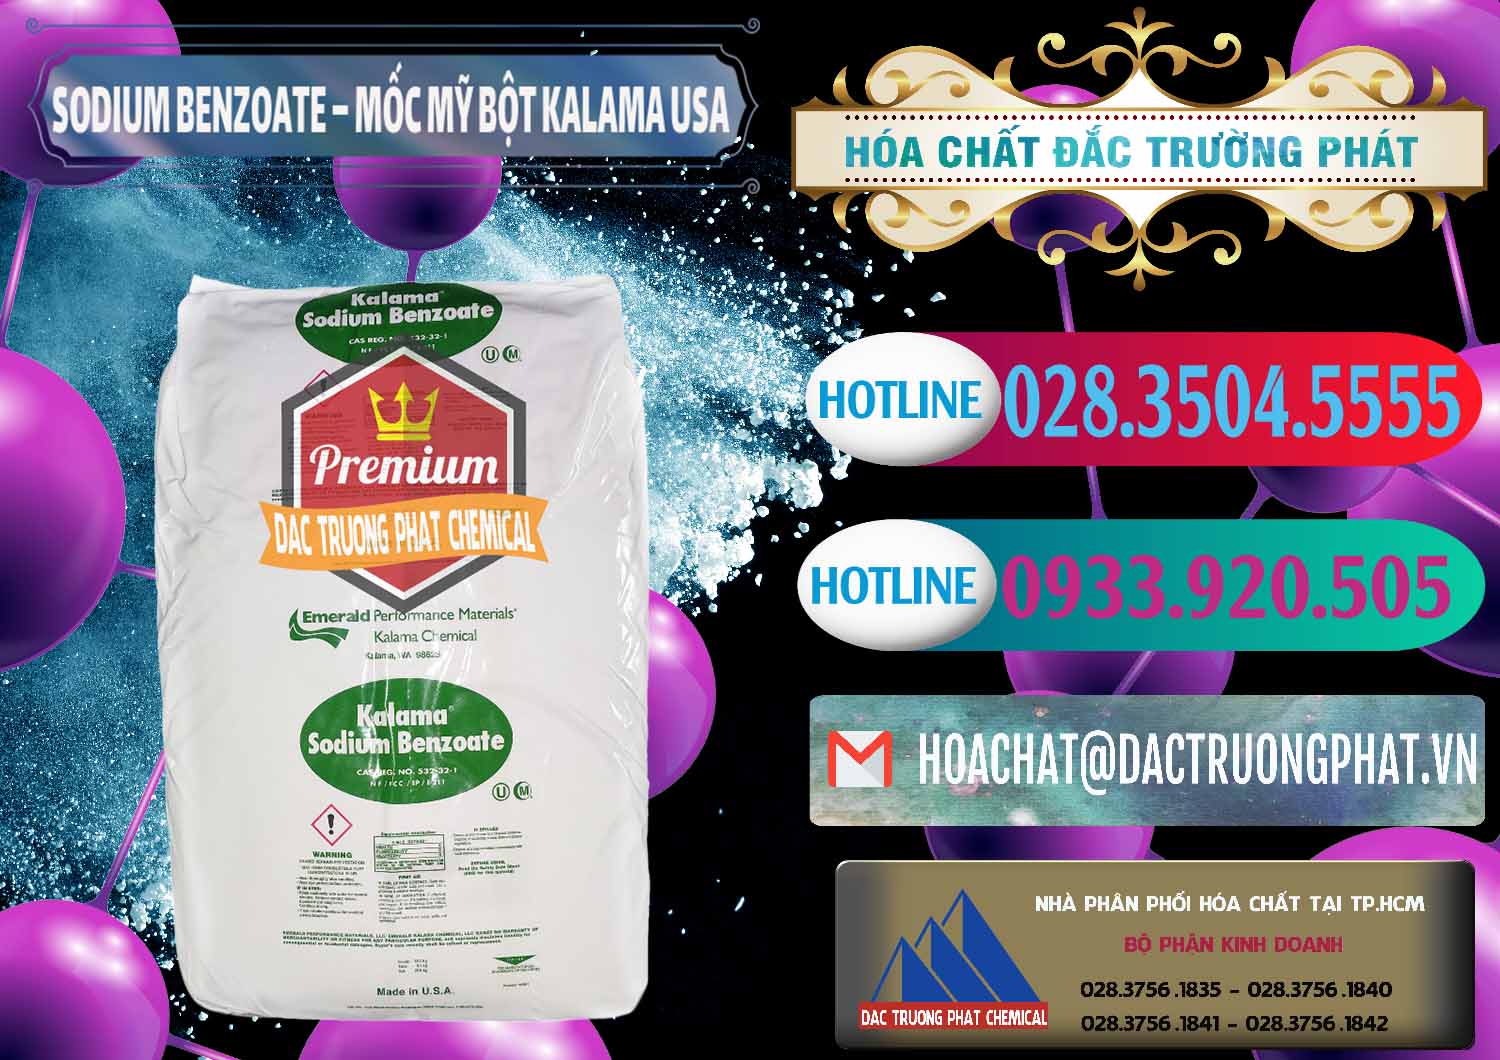 Cty chuyên bán - phân phối Sodium Benzoate - Mốc Bột Kalama Food Grade Mỹ Usa - 0136 - Công ty phân phối - nhập khẩu hóa chất tại TP.HCM - truongphat.vn